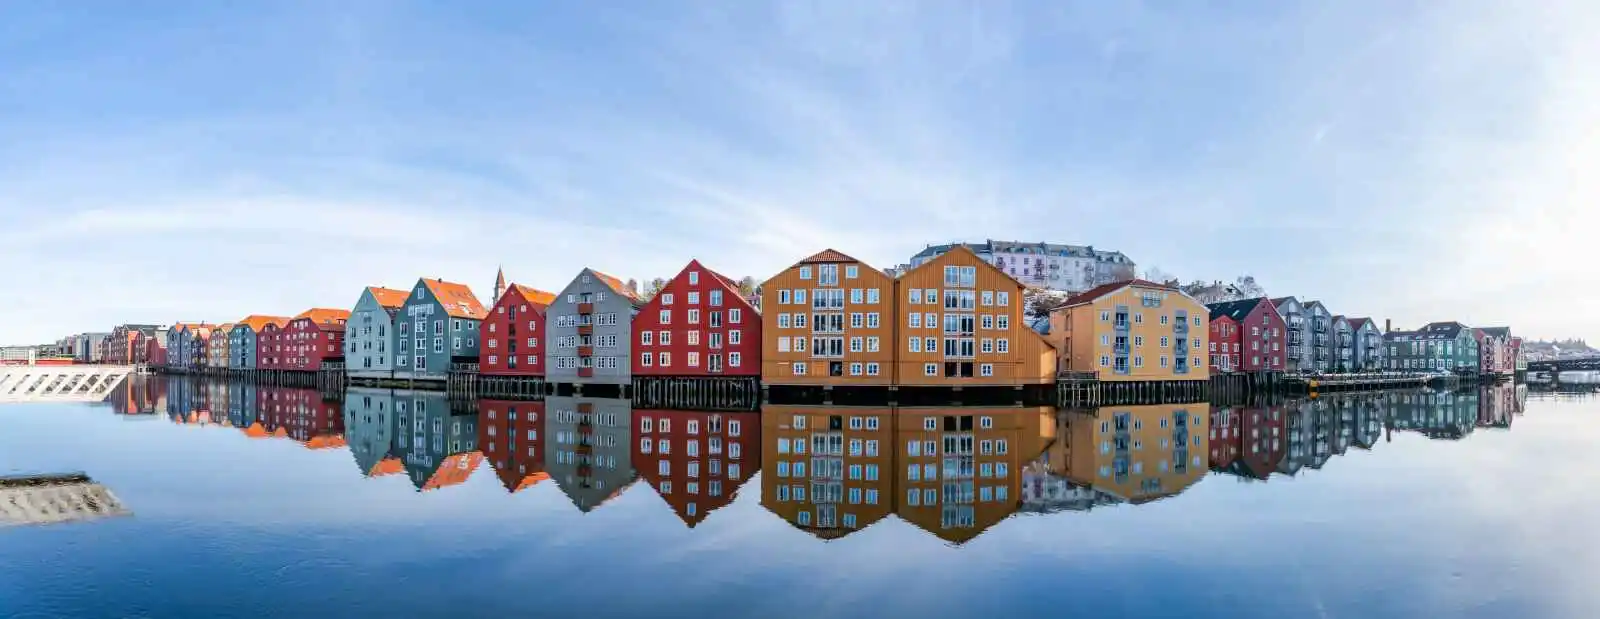 Maisons colorées sur la rivière Nidelva, Trondheim, Norvège